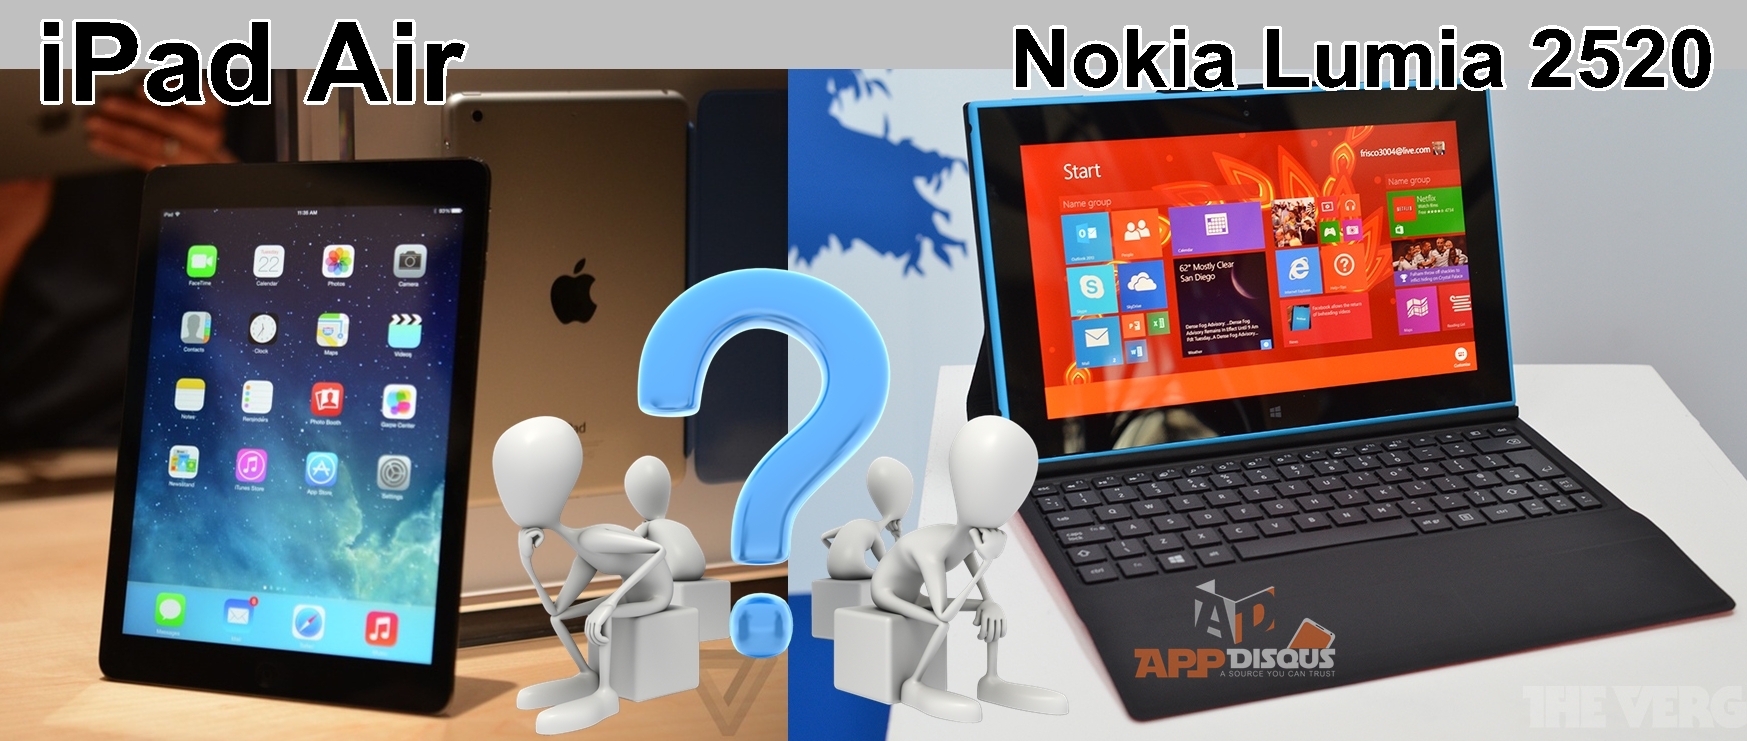  iPad Air vs Nokia Lumia 2520